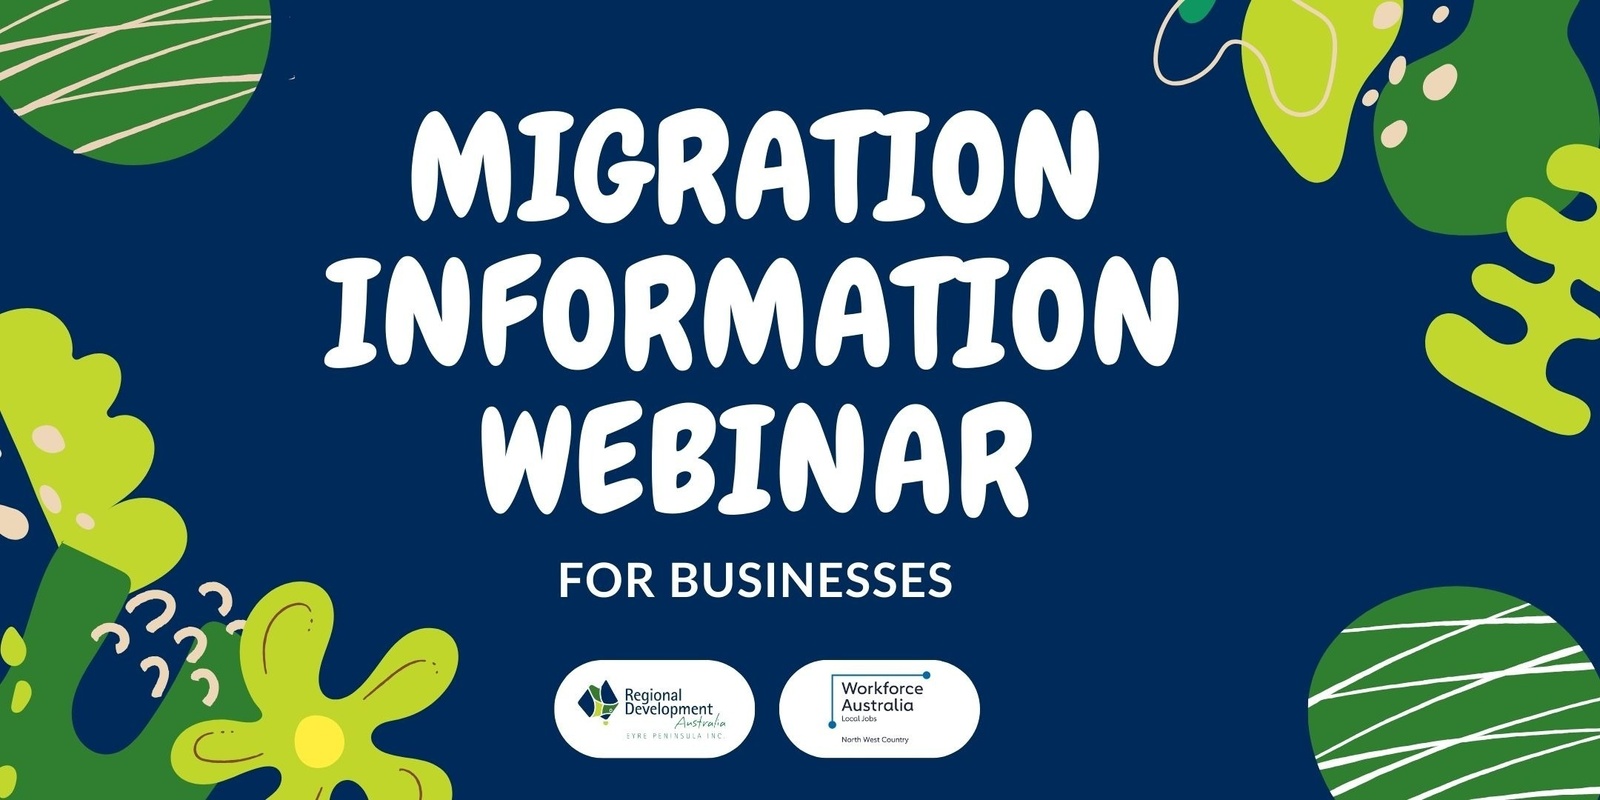 Banner image for Migration Information Webinar for Businesses